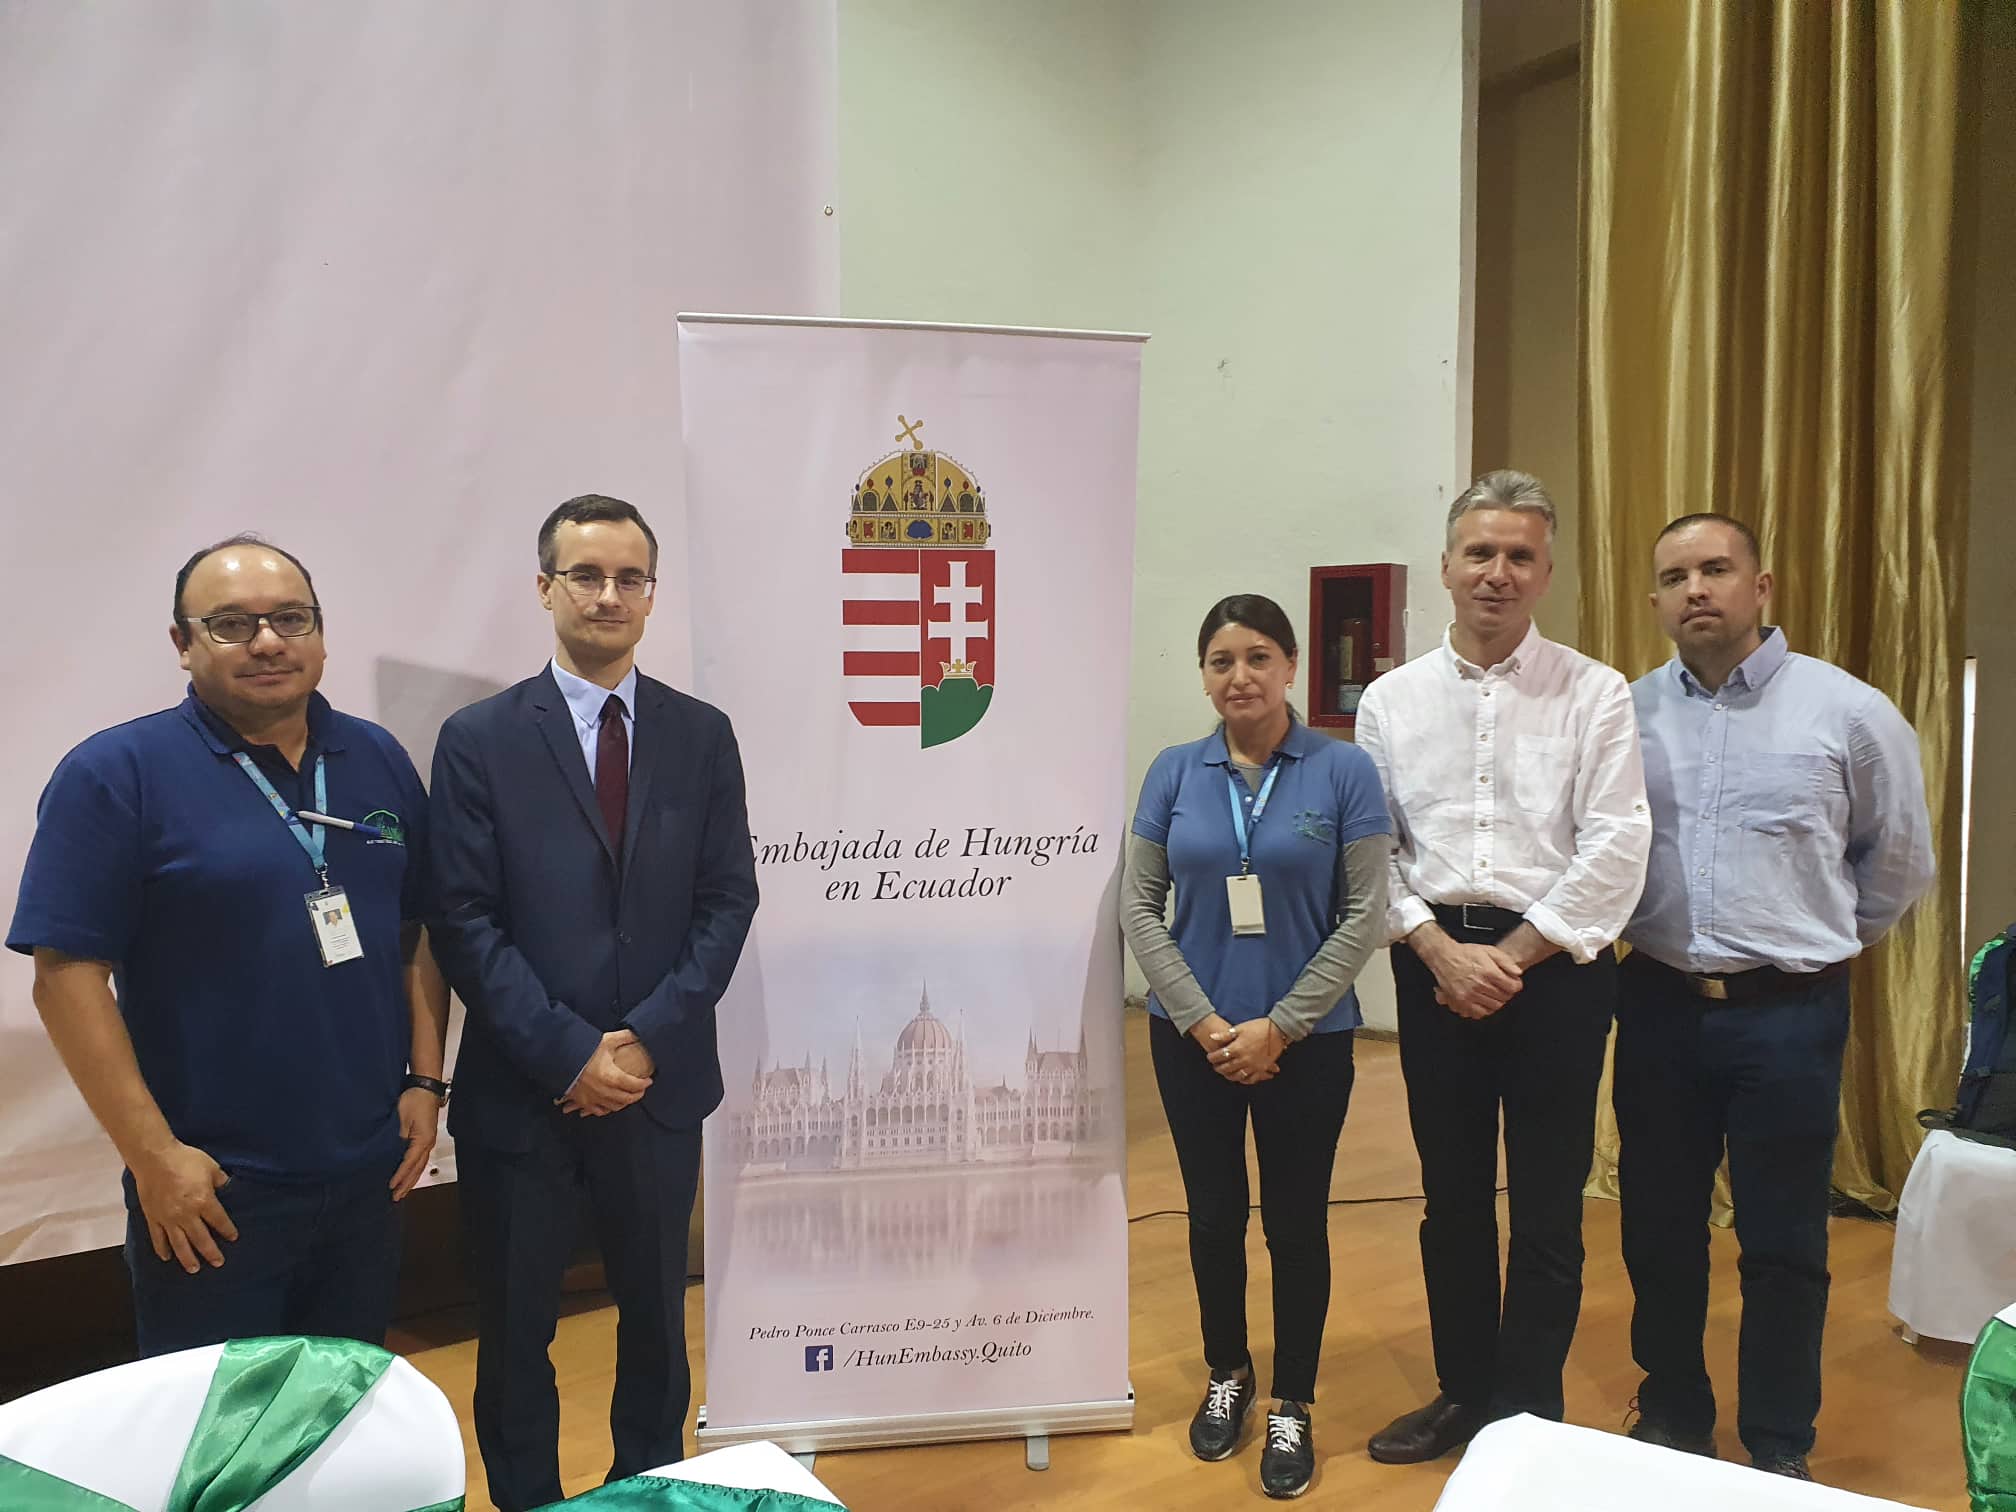 A Soproni Egyetem erdőgazdálkodási megoldásokat ismertetett Ecuadorban